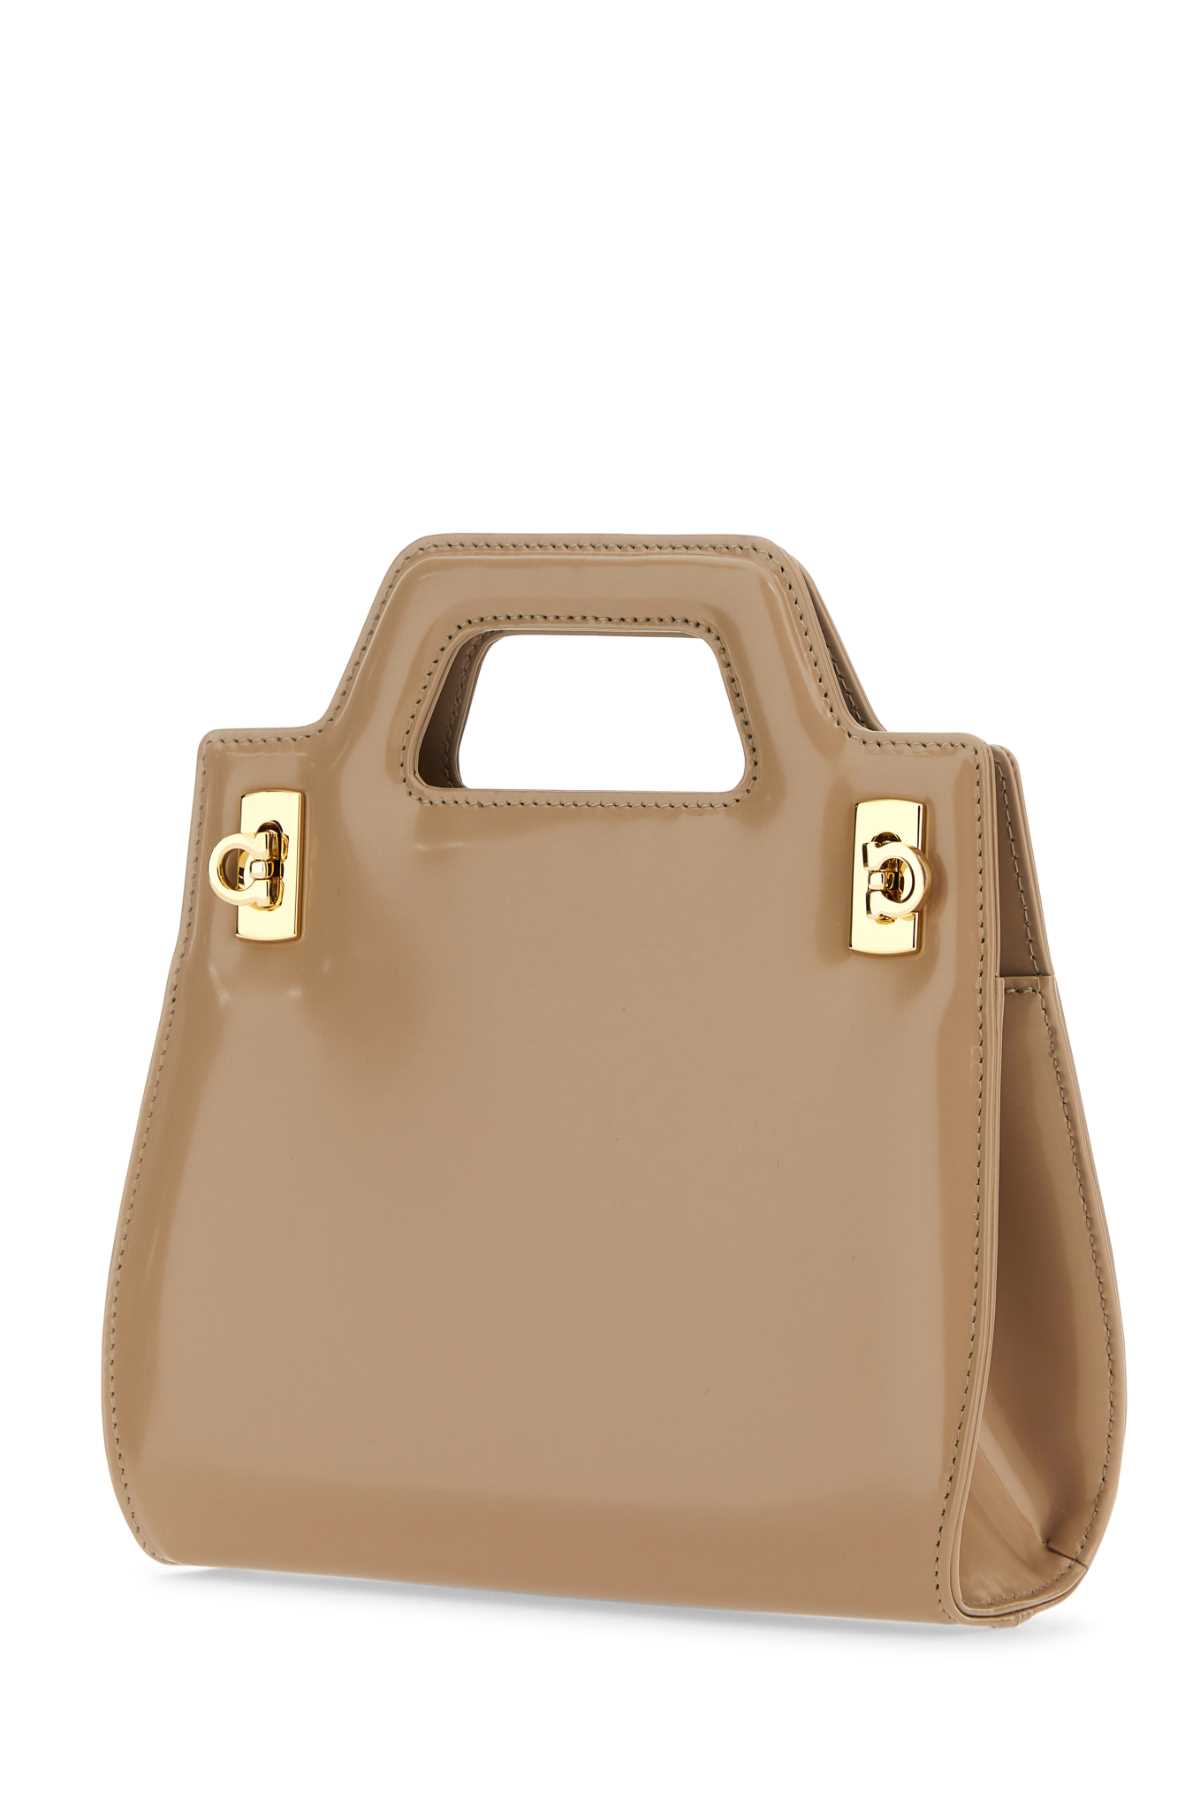 Ferragamo Beige Leather Mini Wanda Handbag